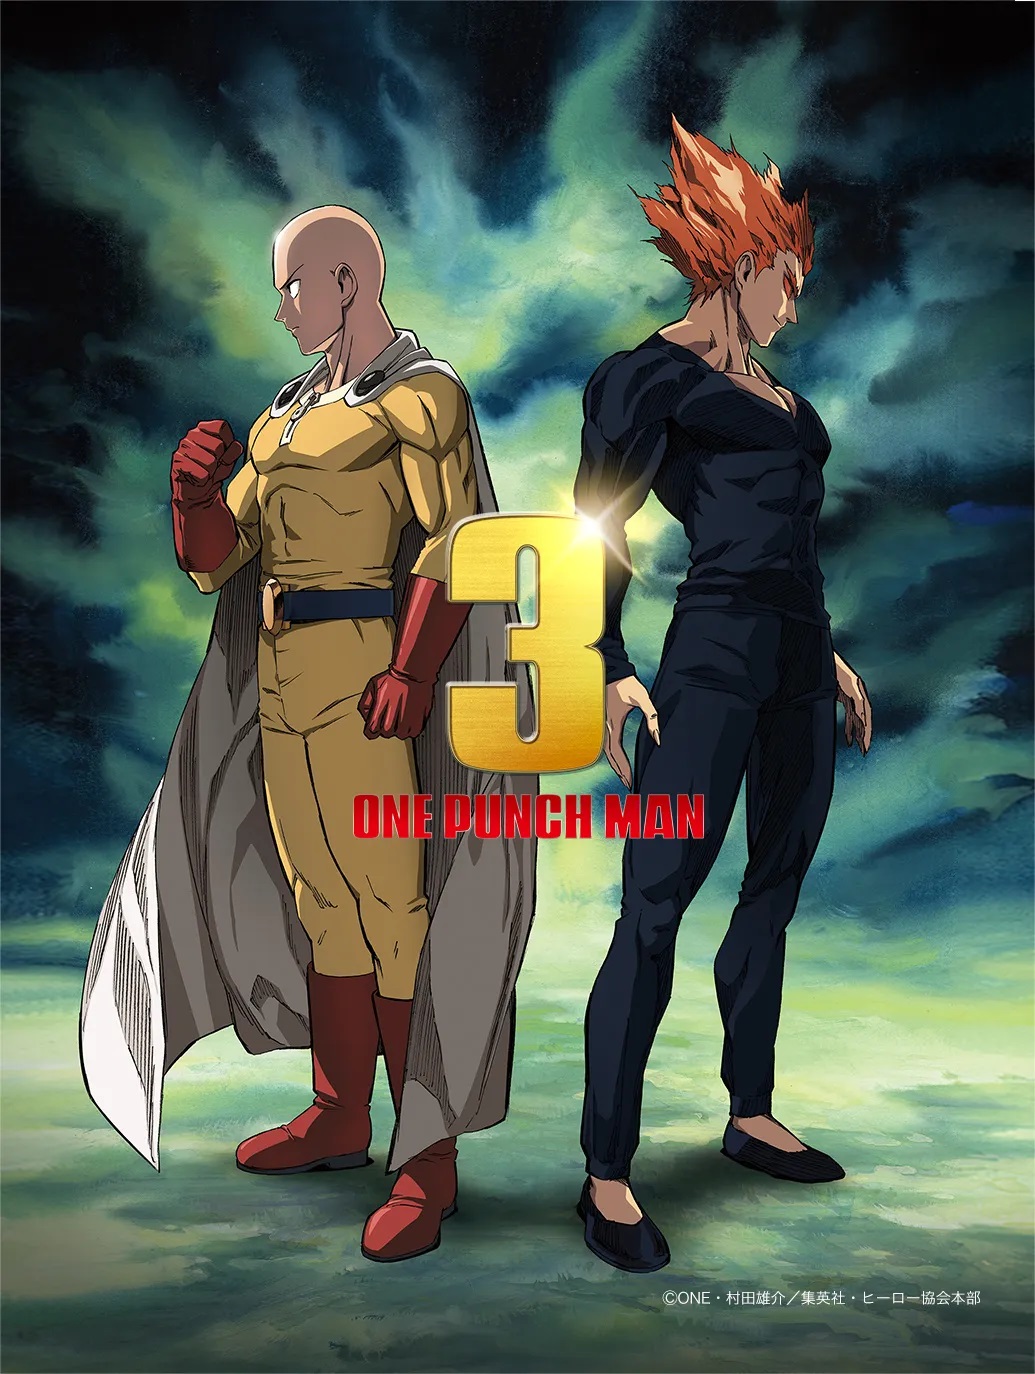 Anime One Punch Man công bố ra phần 3